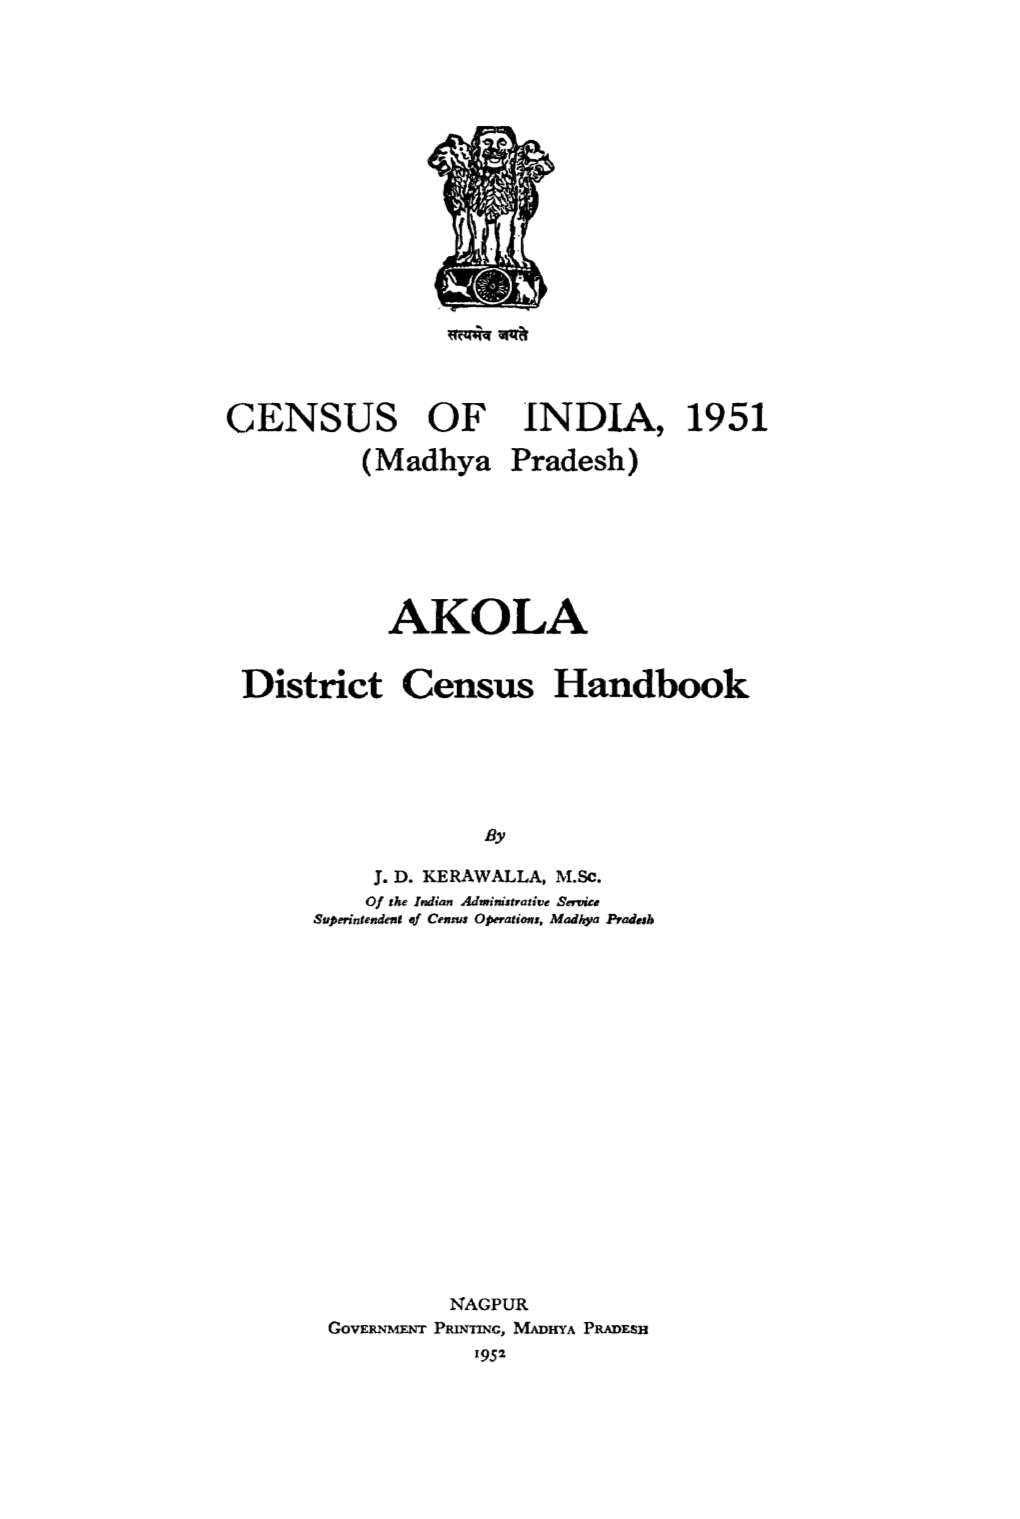 CENSUS of INDIA, 1951 District Census Handbook